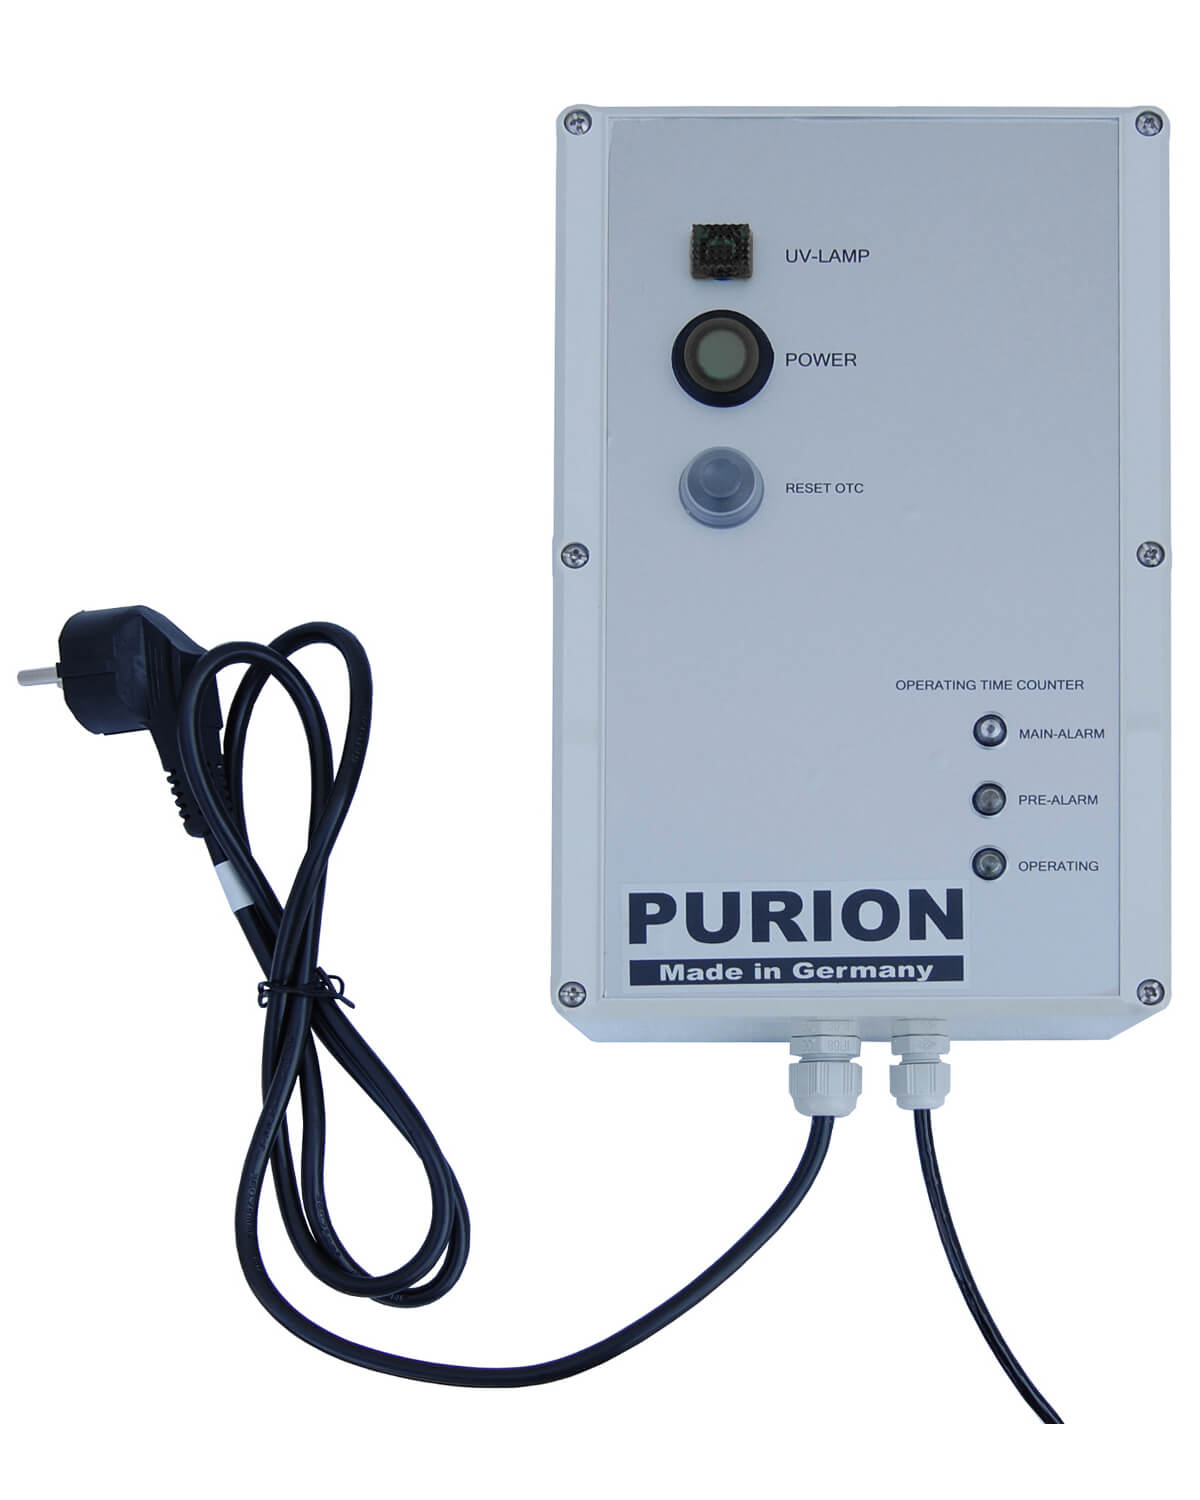 Das PURION 400 OTC Bundle ist ein innovatives Gerät der PURION GmbH, das speziell für die Reinigung von Wasser entwickelt wurde. Mit seiner leistungsstarken UV-C-Lam